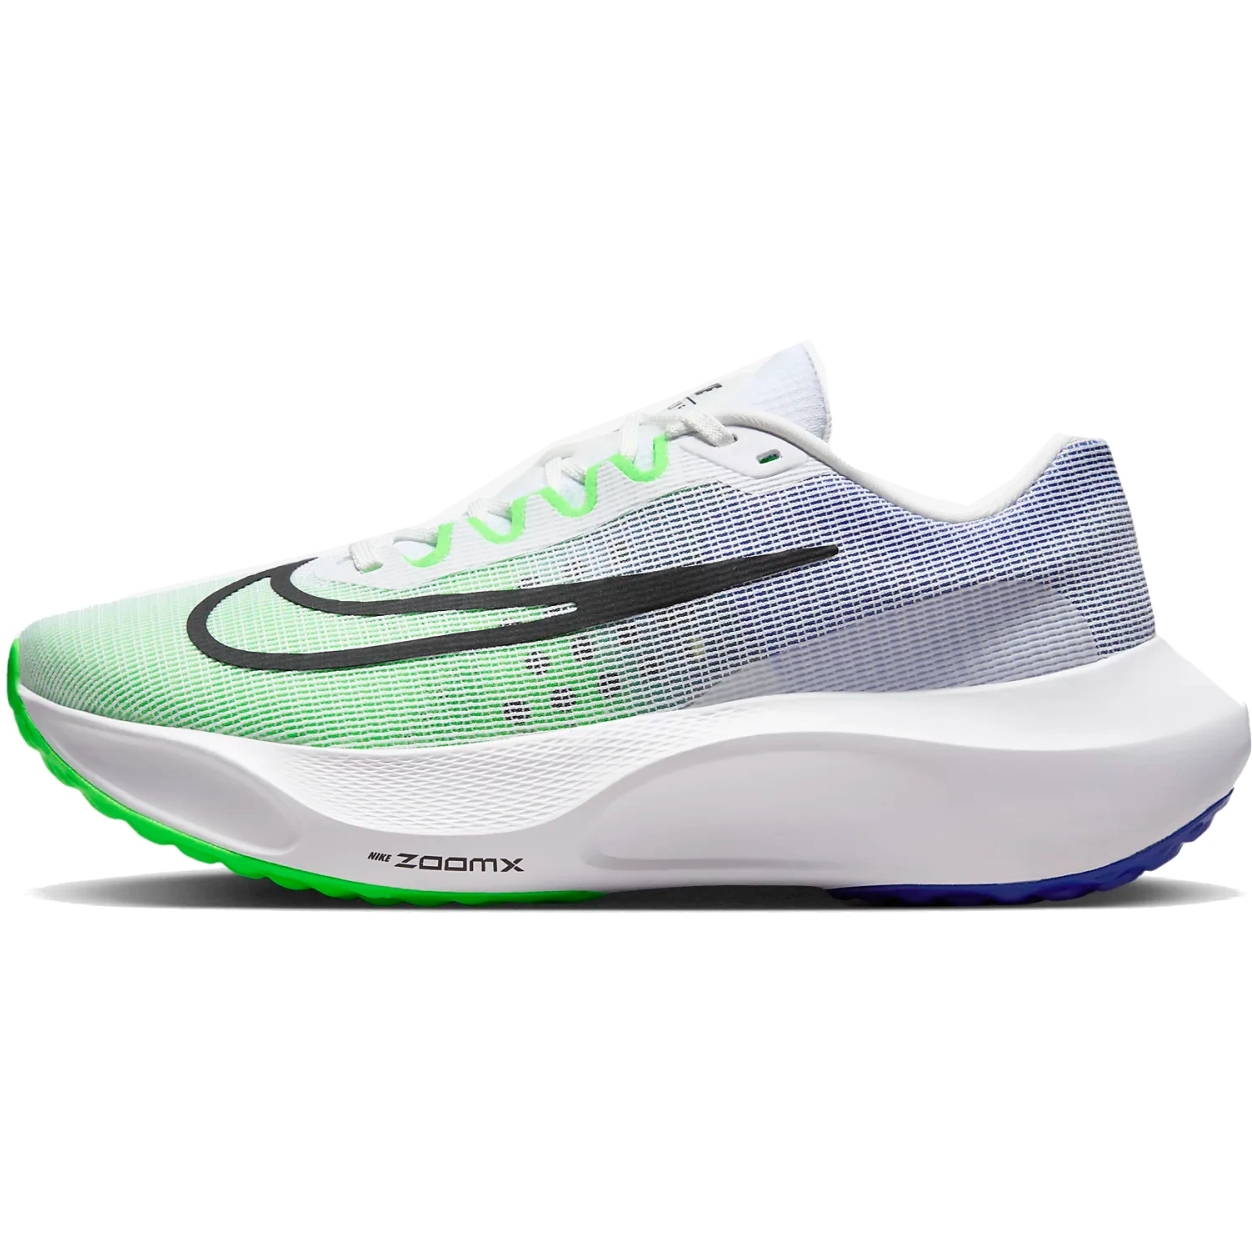 Bild von Nike Zoom Fly 5 Straßenlaufschuhe Herren - white/green strike/racer blue/black DM8968-101